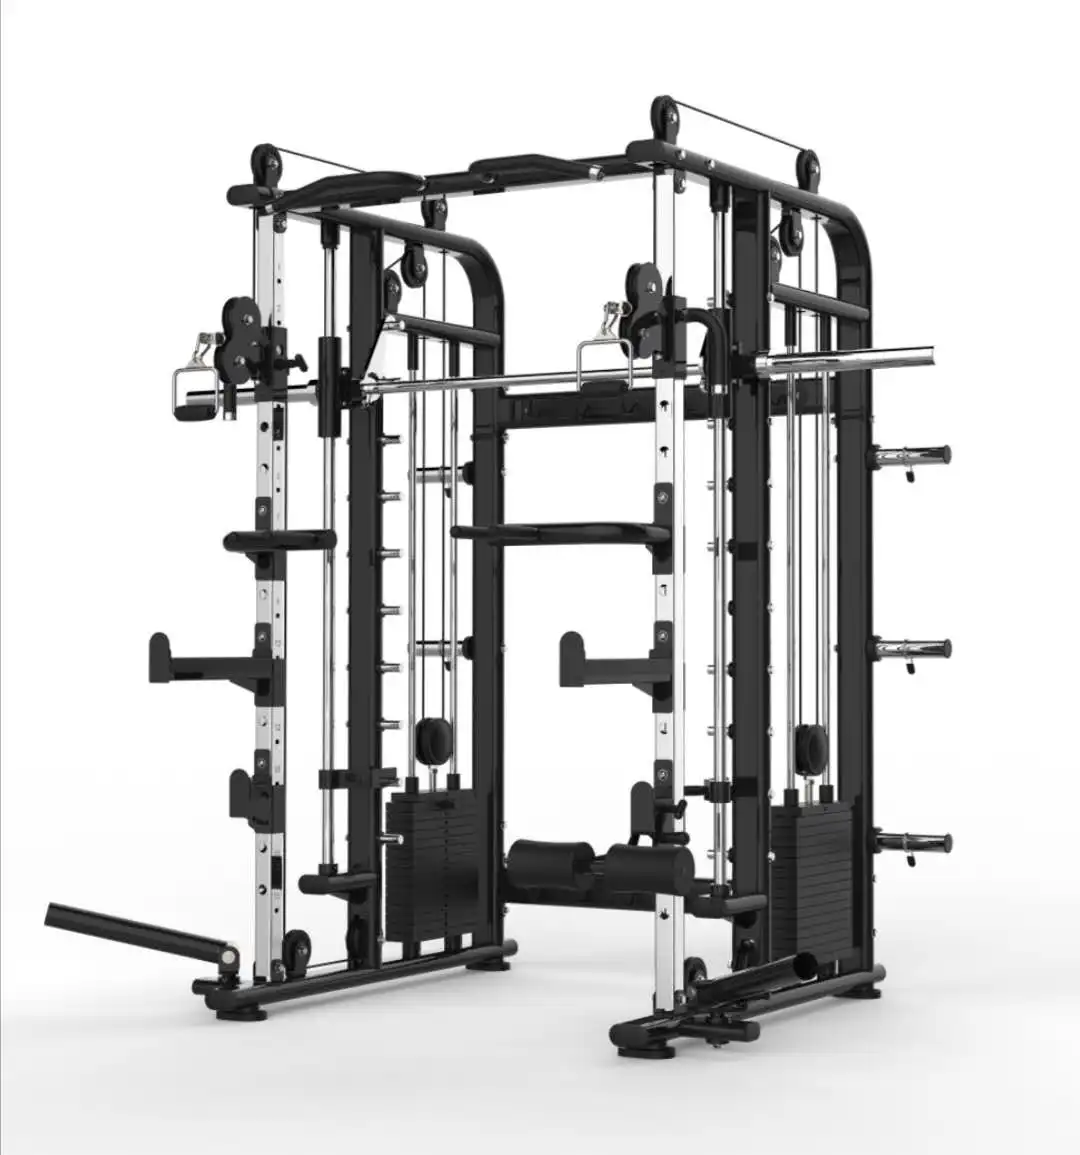 Fitness geräte Multifunktion ale Smith-Maschine Kabel kreuzung mit eingebauten 160 kg Stapel gewichten für den Heimgebrauch im Fitness studio